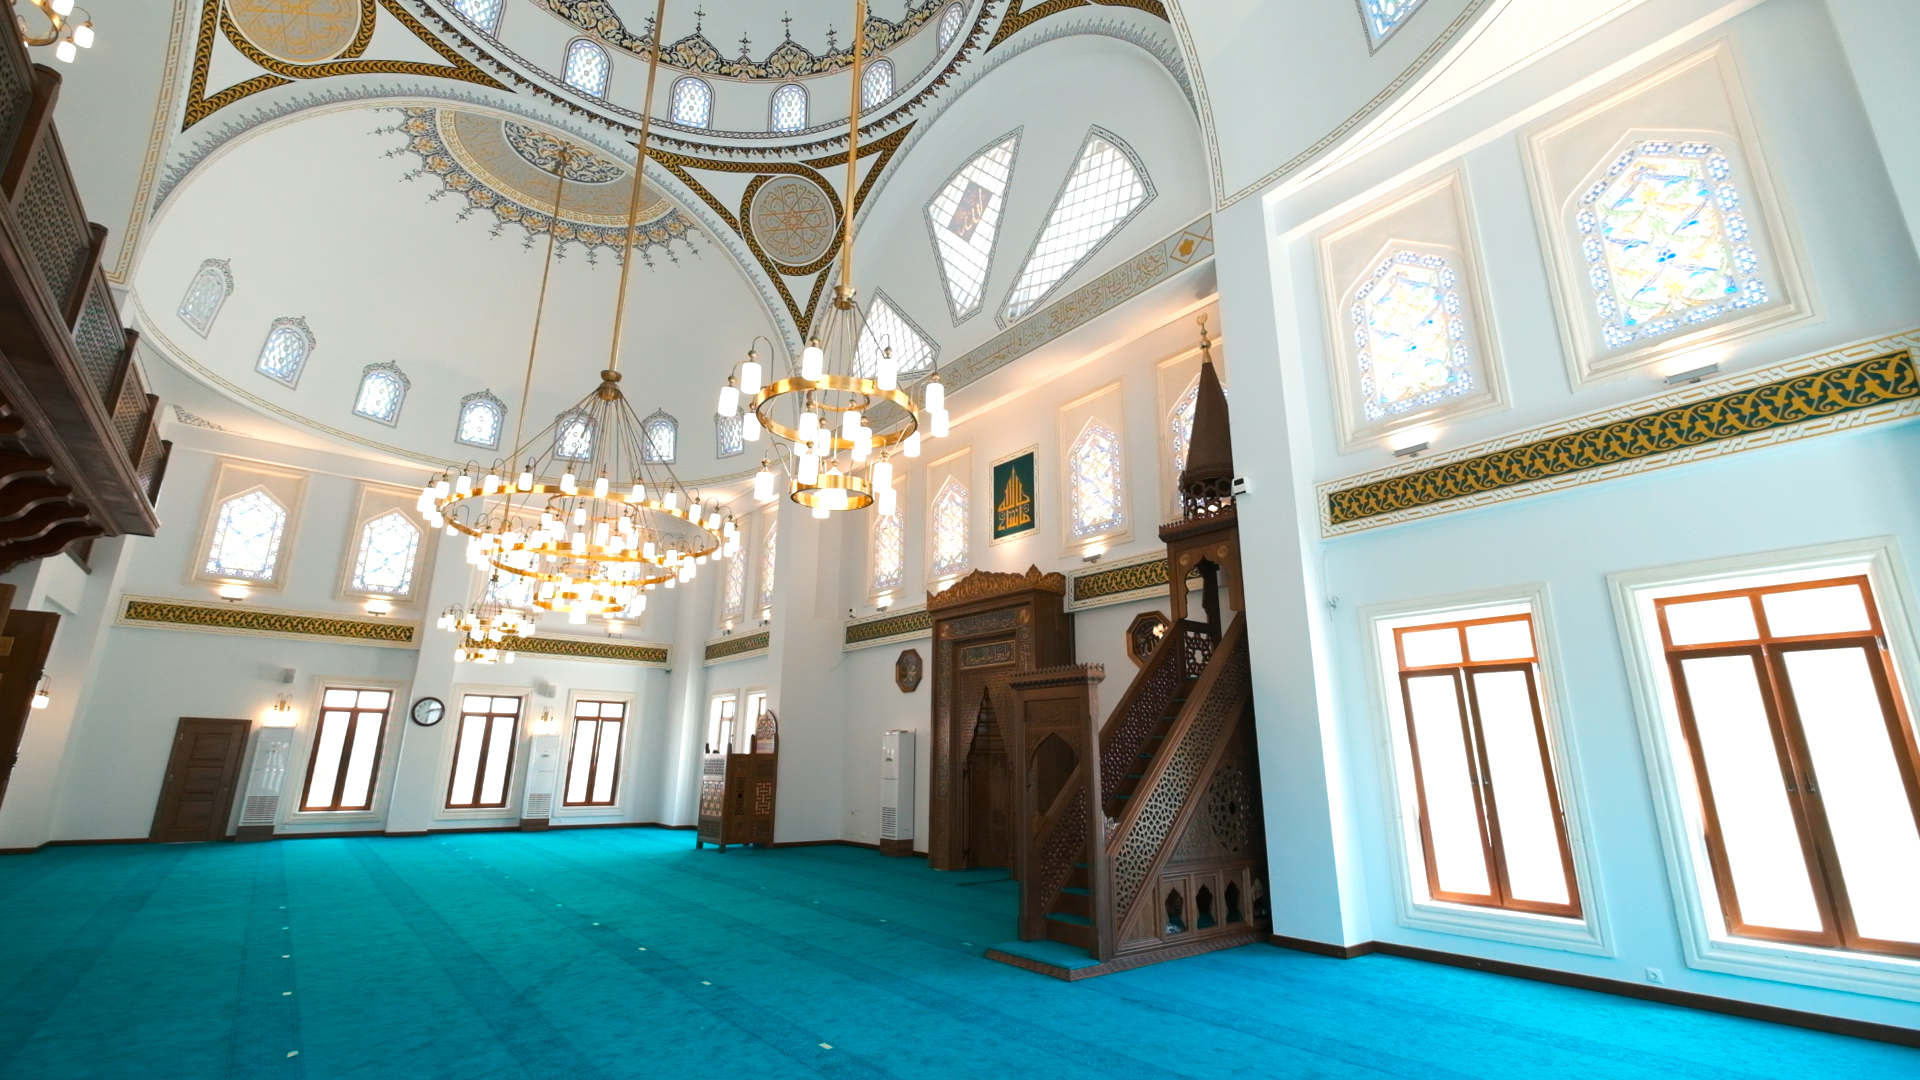 Şehriban Hatun Camii burhaniye içi.jpg